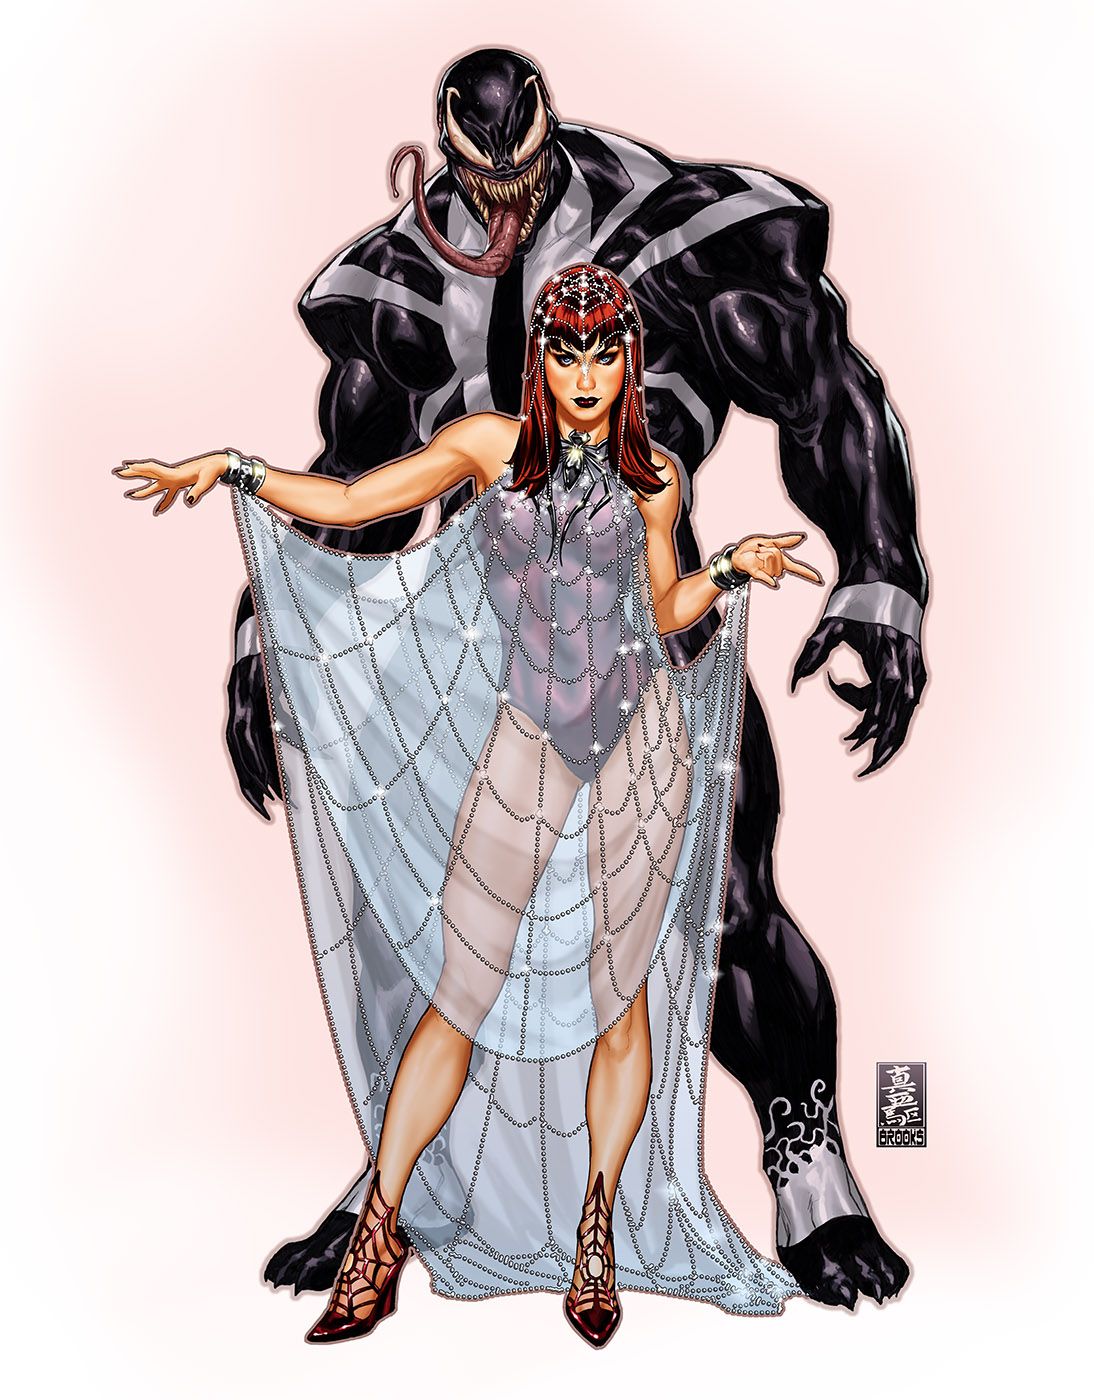 Venom is MJ's date for the X-Men's Hellfire Gala in Mark Brooks' amazing fan art